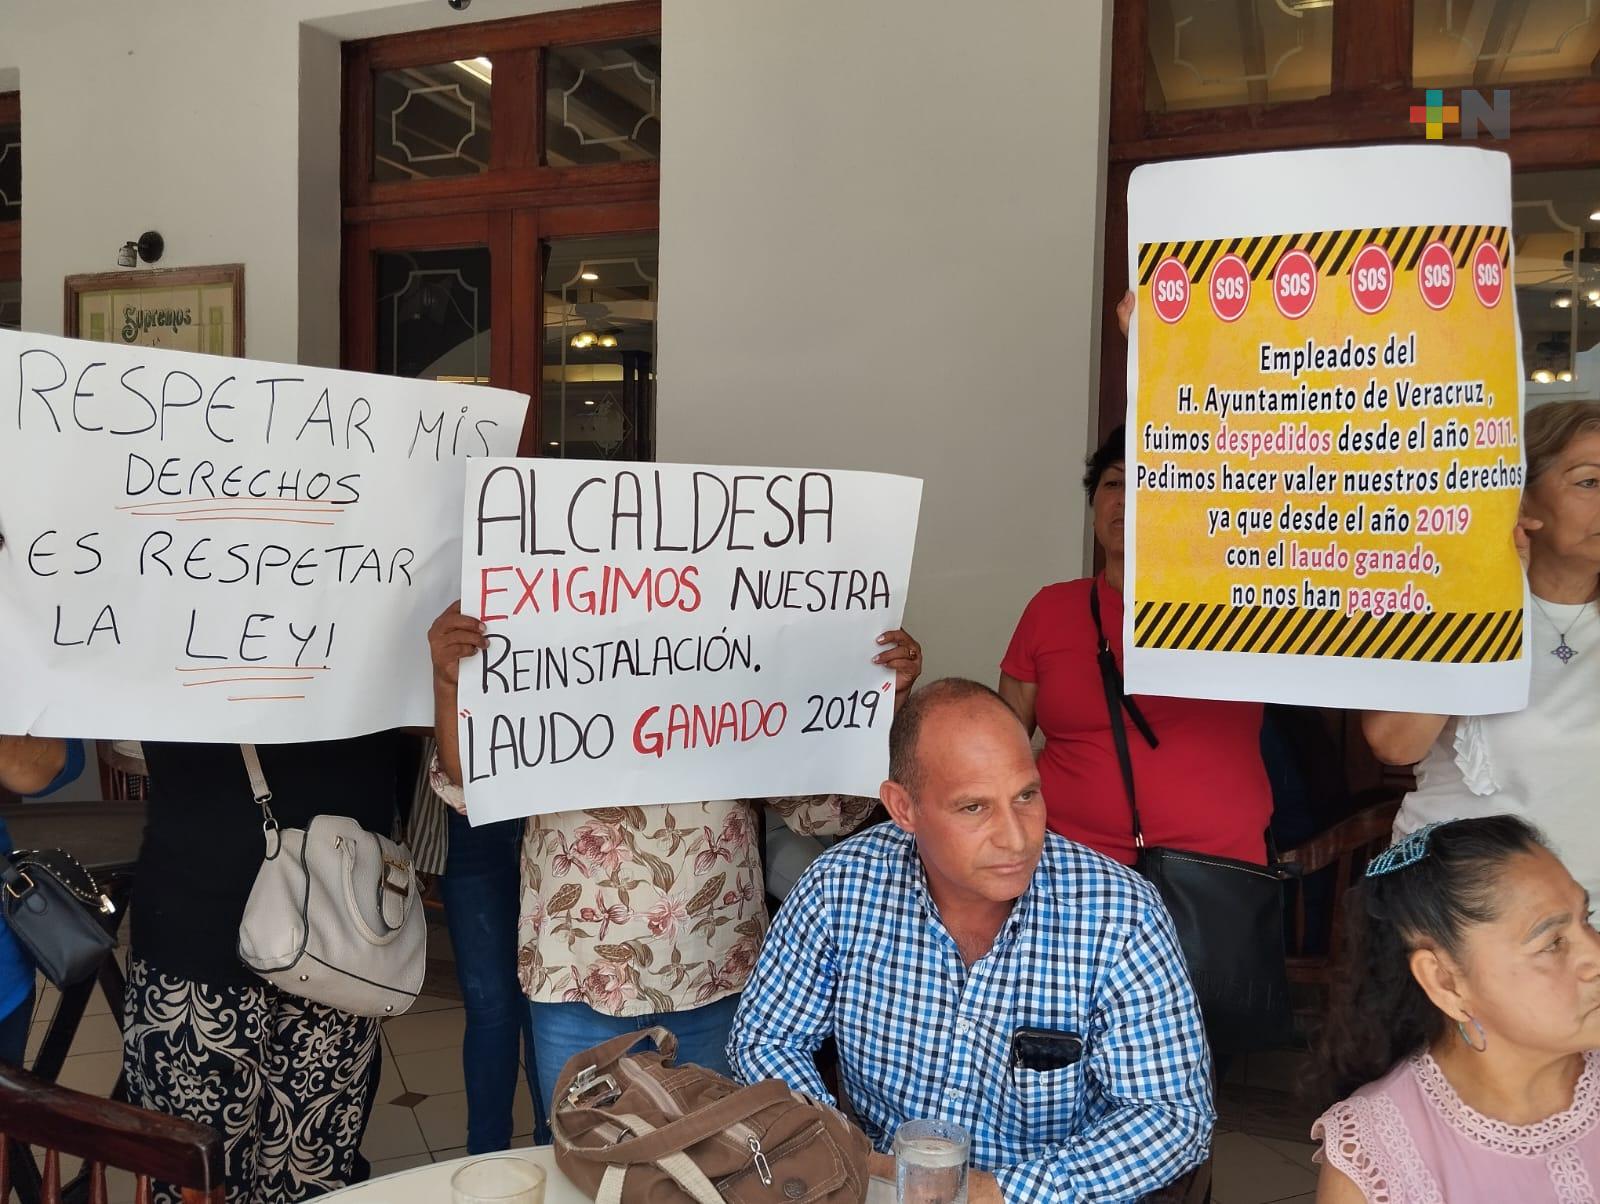 Extrabajadores del ayuntamiento de Veracruz exigen pago de salarios caídos y reinstalación